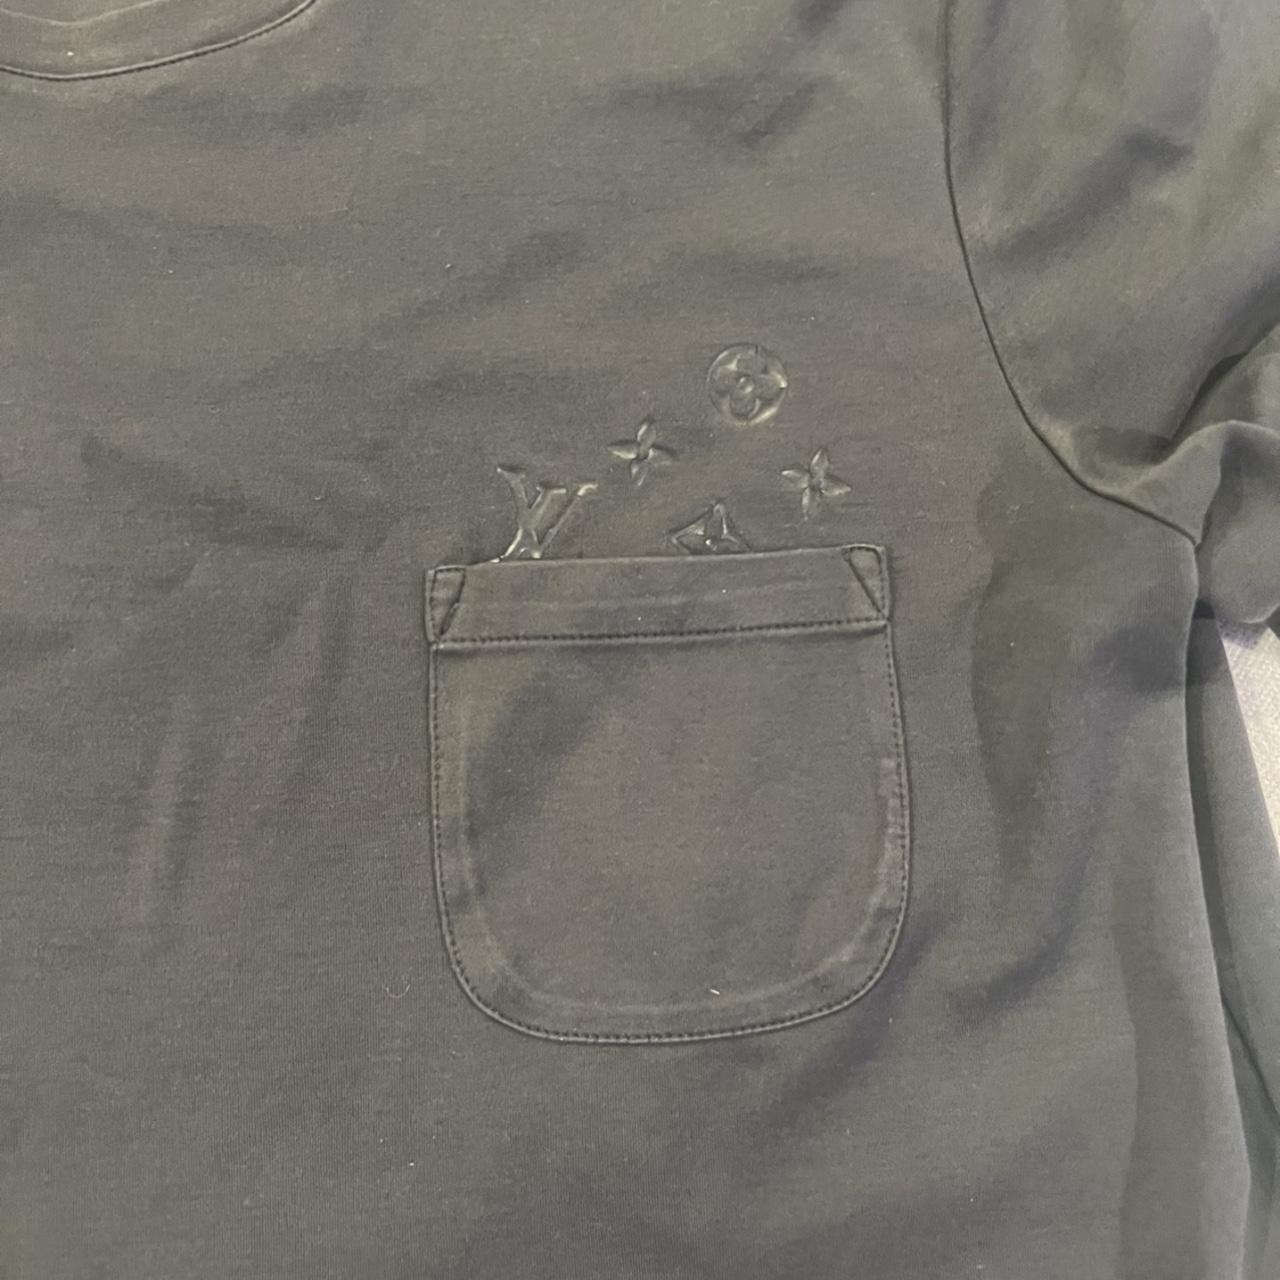 Louis Vuitton heatmap shirt w/pocket - Depop